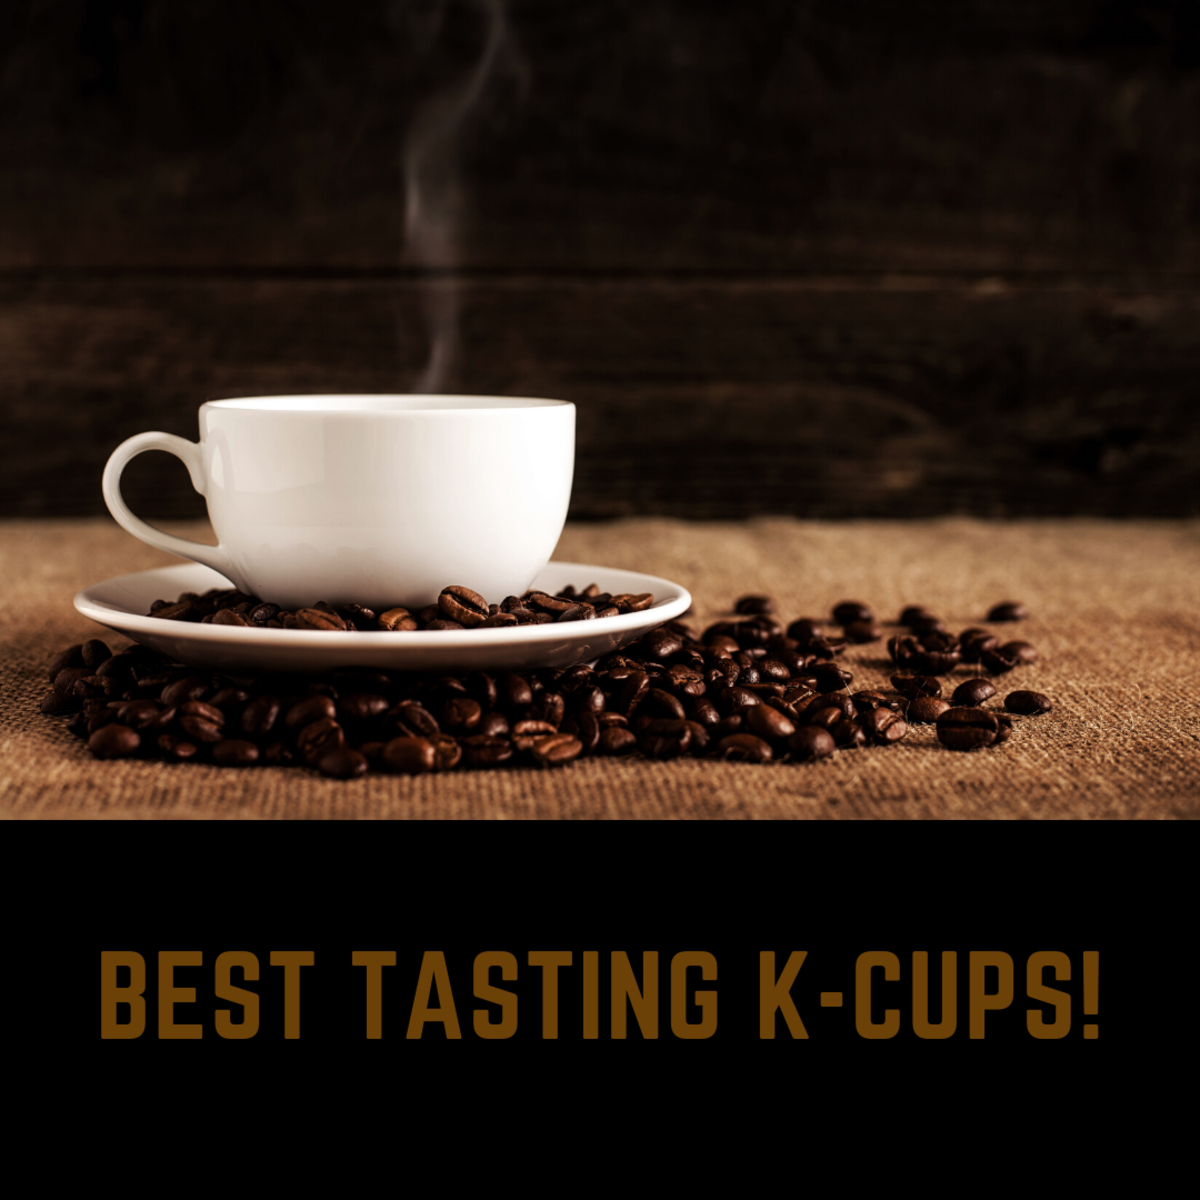 Best Tasting K-Cups for Keurig Coffee Makers